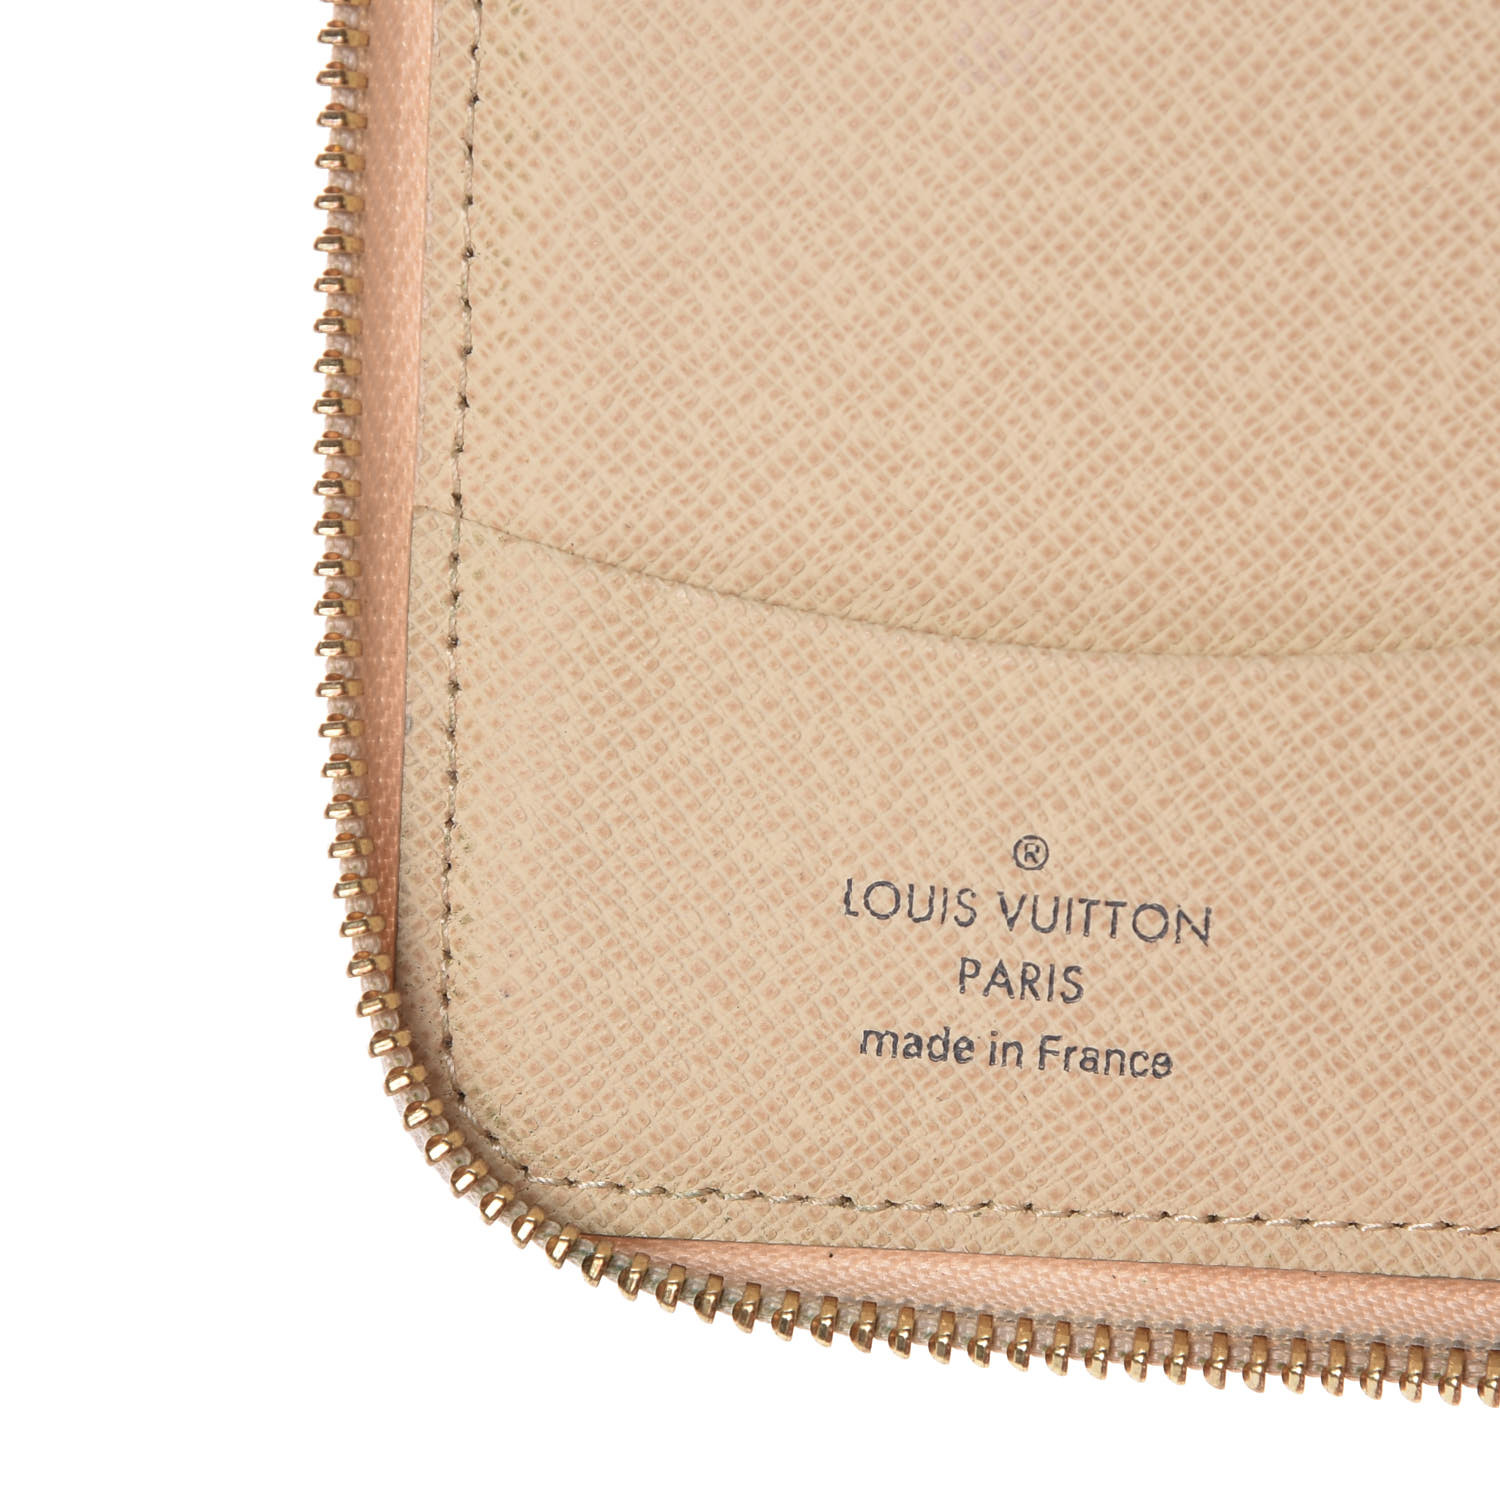 LOUIS VUITTON Damier Azur Compact Zippy Wallet 360653